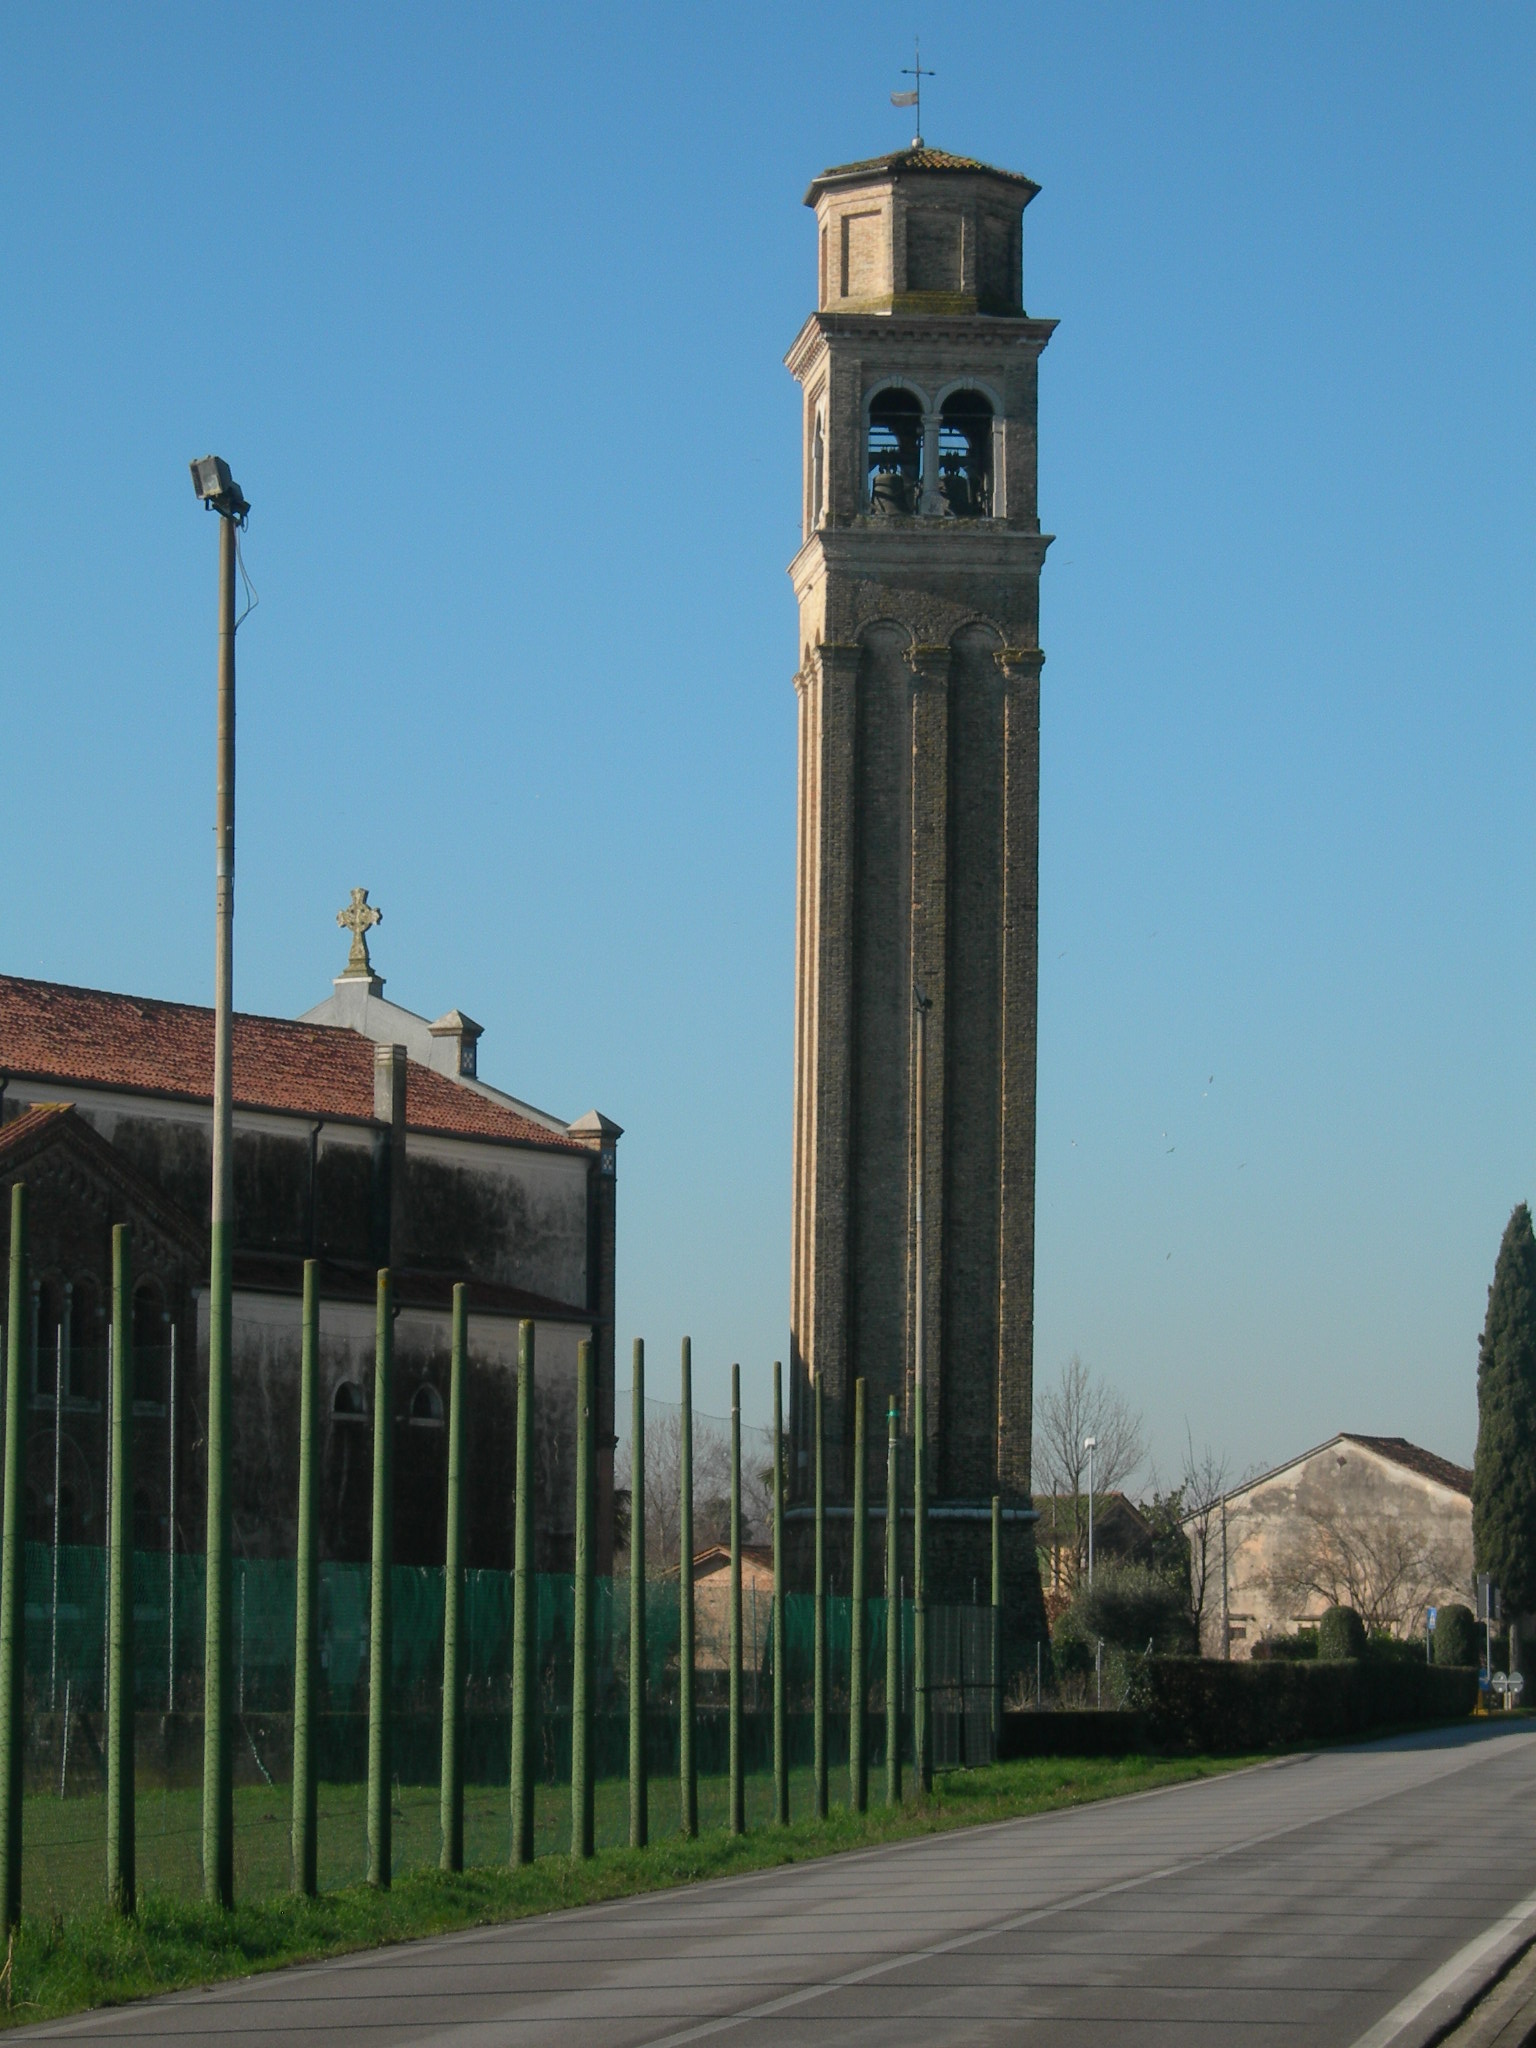 campanile della chiesa dei Santi Giuseppe e Colombano (campanile) - Breda di Piave (TV) 